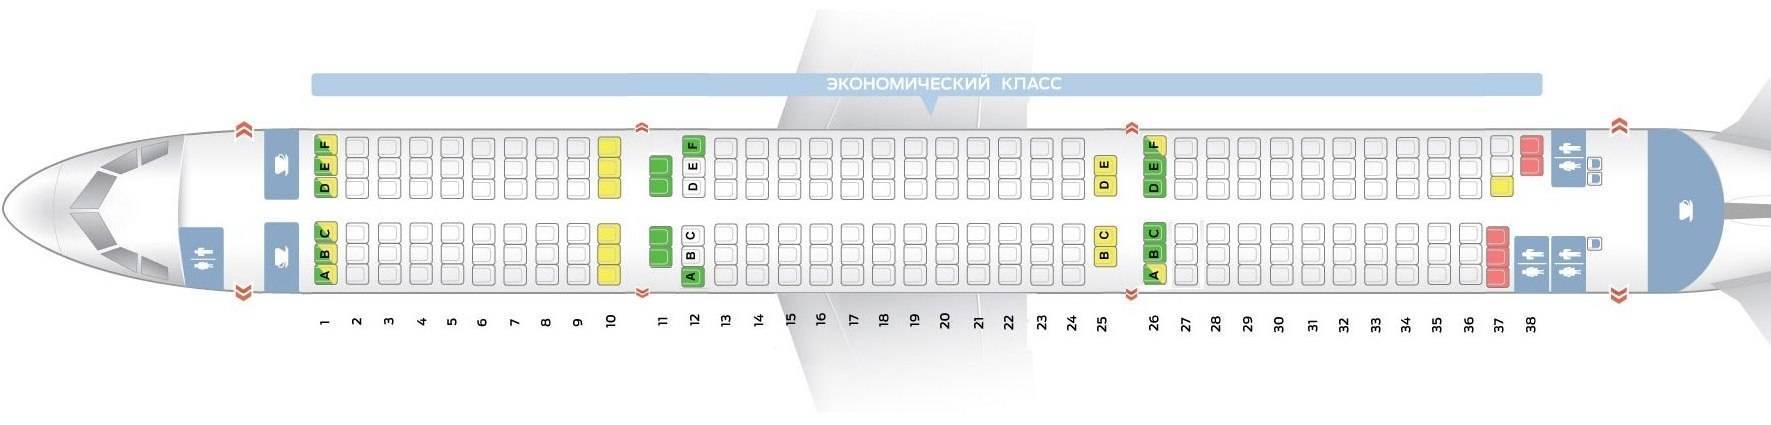 Схема салона и лучшие места в boeing 737-800 s7 airlines | авиакомпании и авиалинии россии и мира